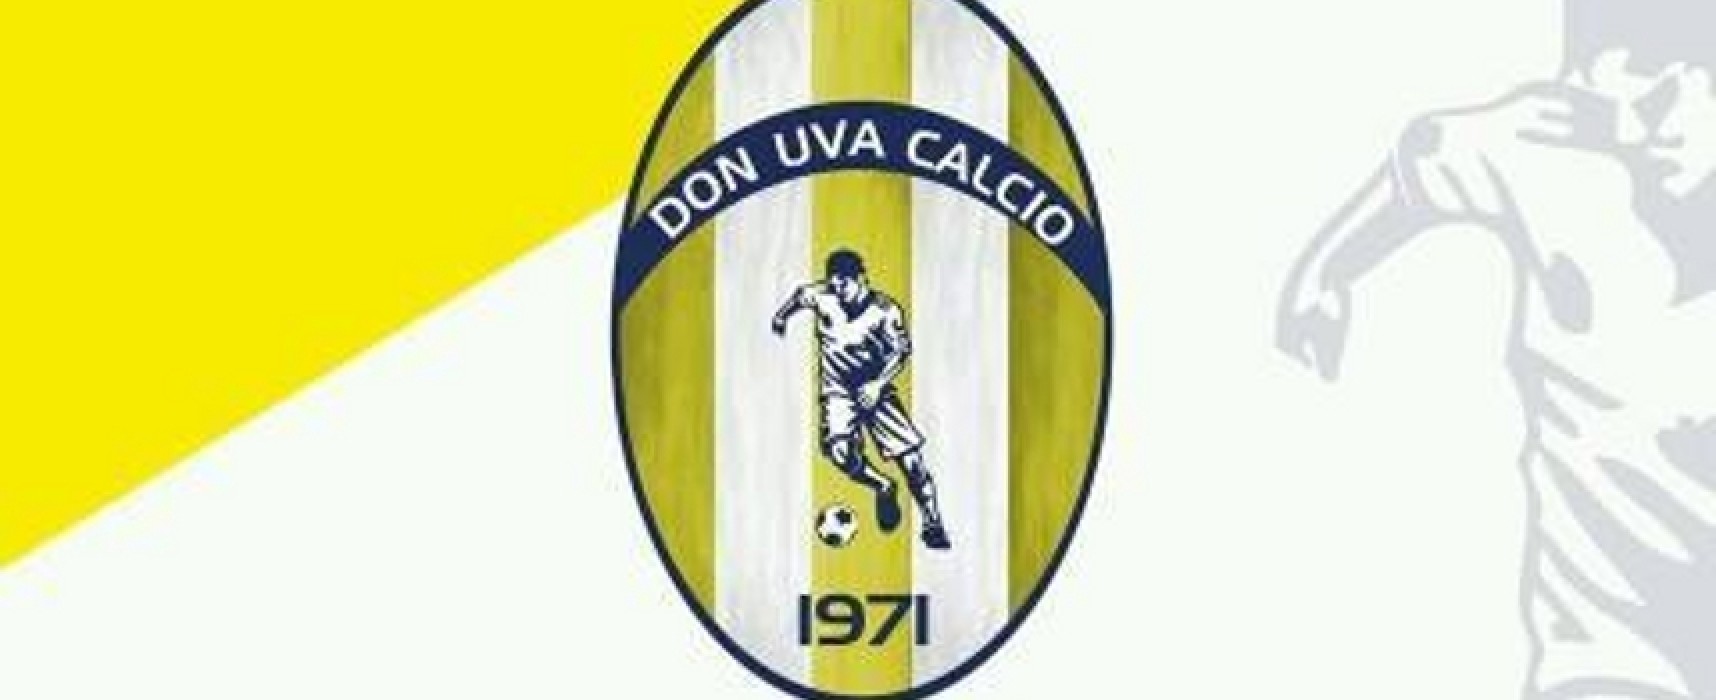 Don Uva Calcio, domani raduno selettivo per giovani calciatori al “Di Liddo”